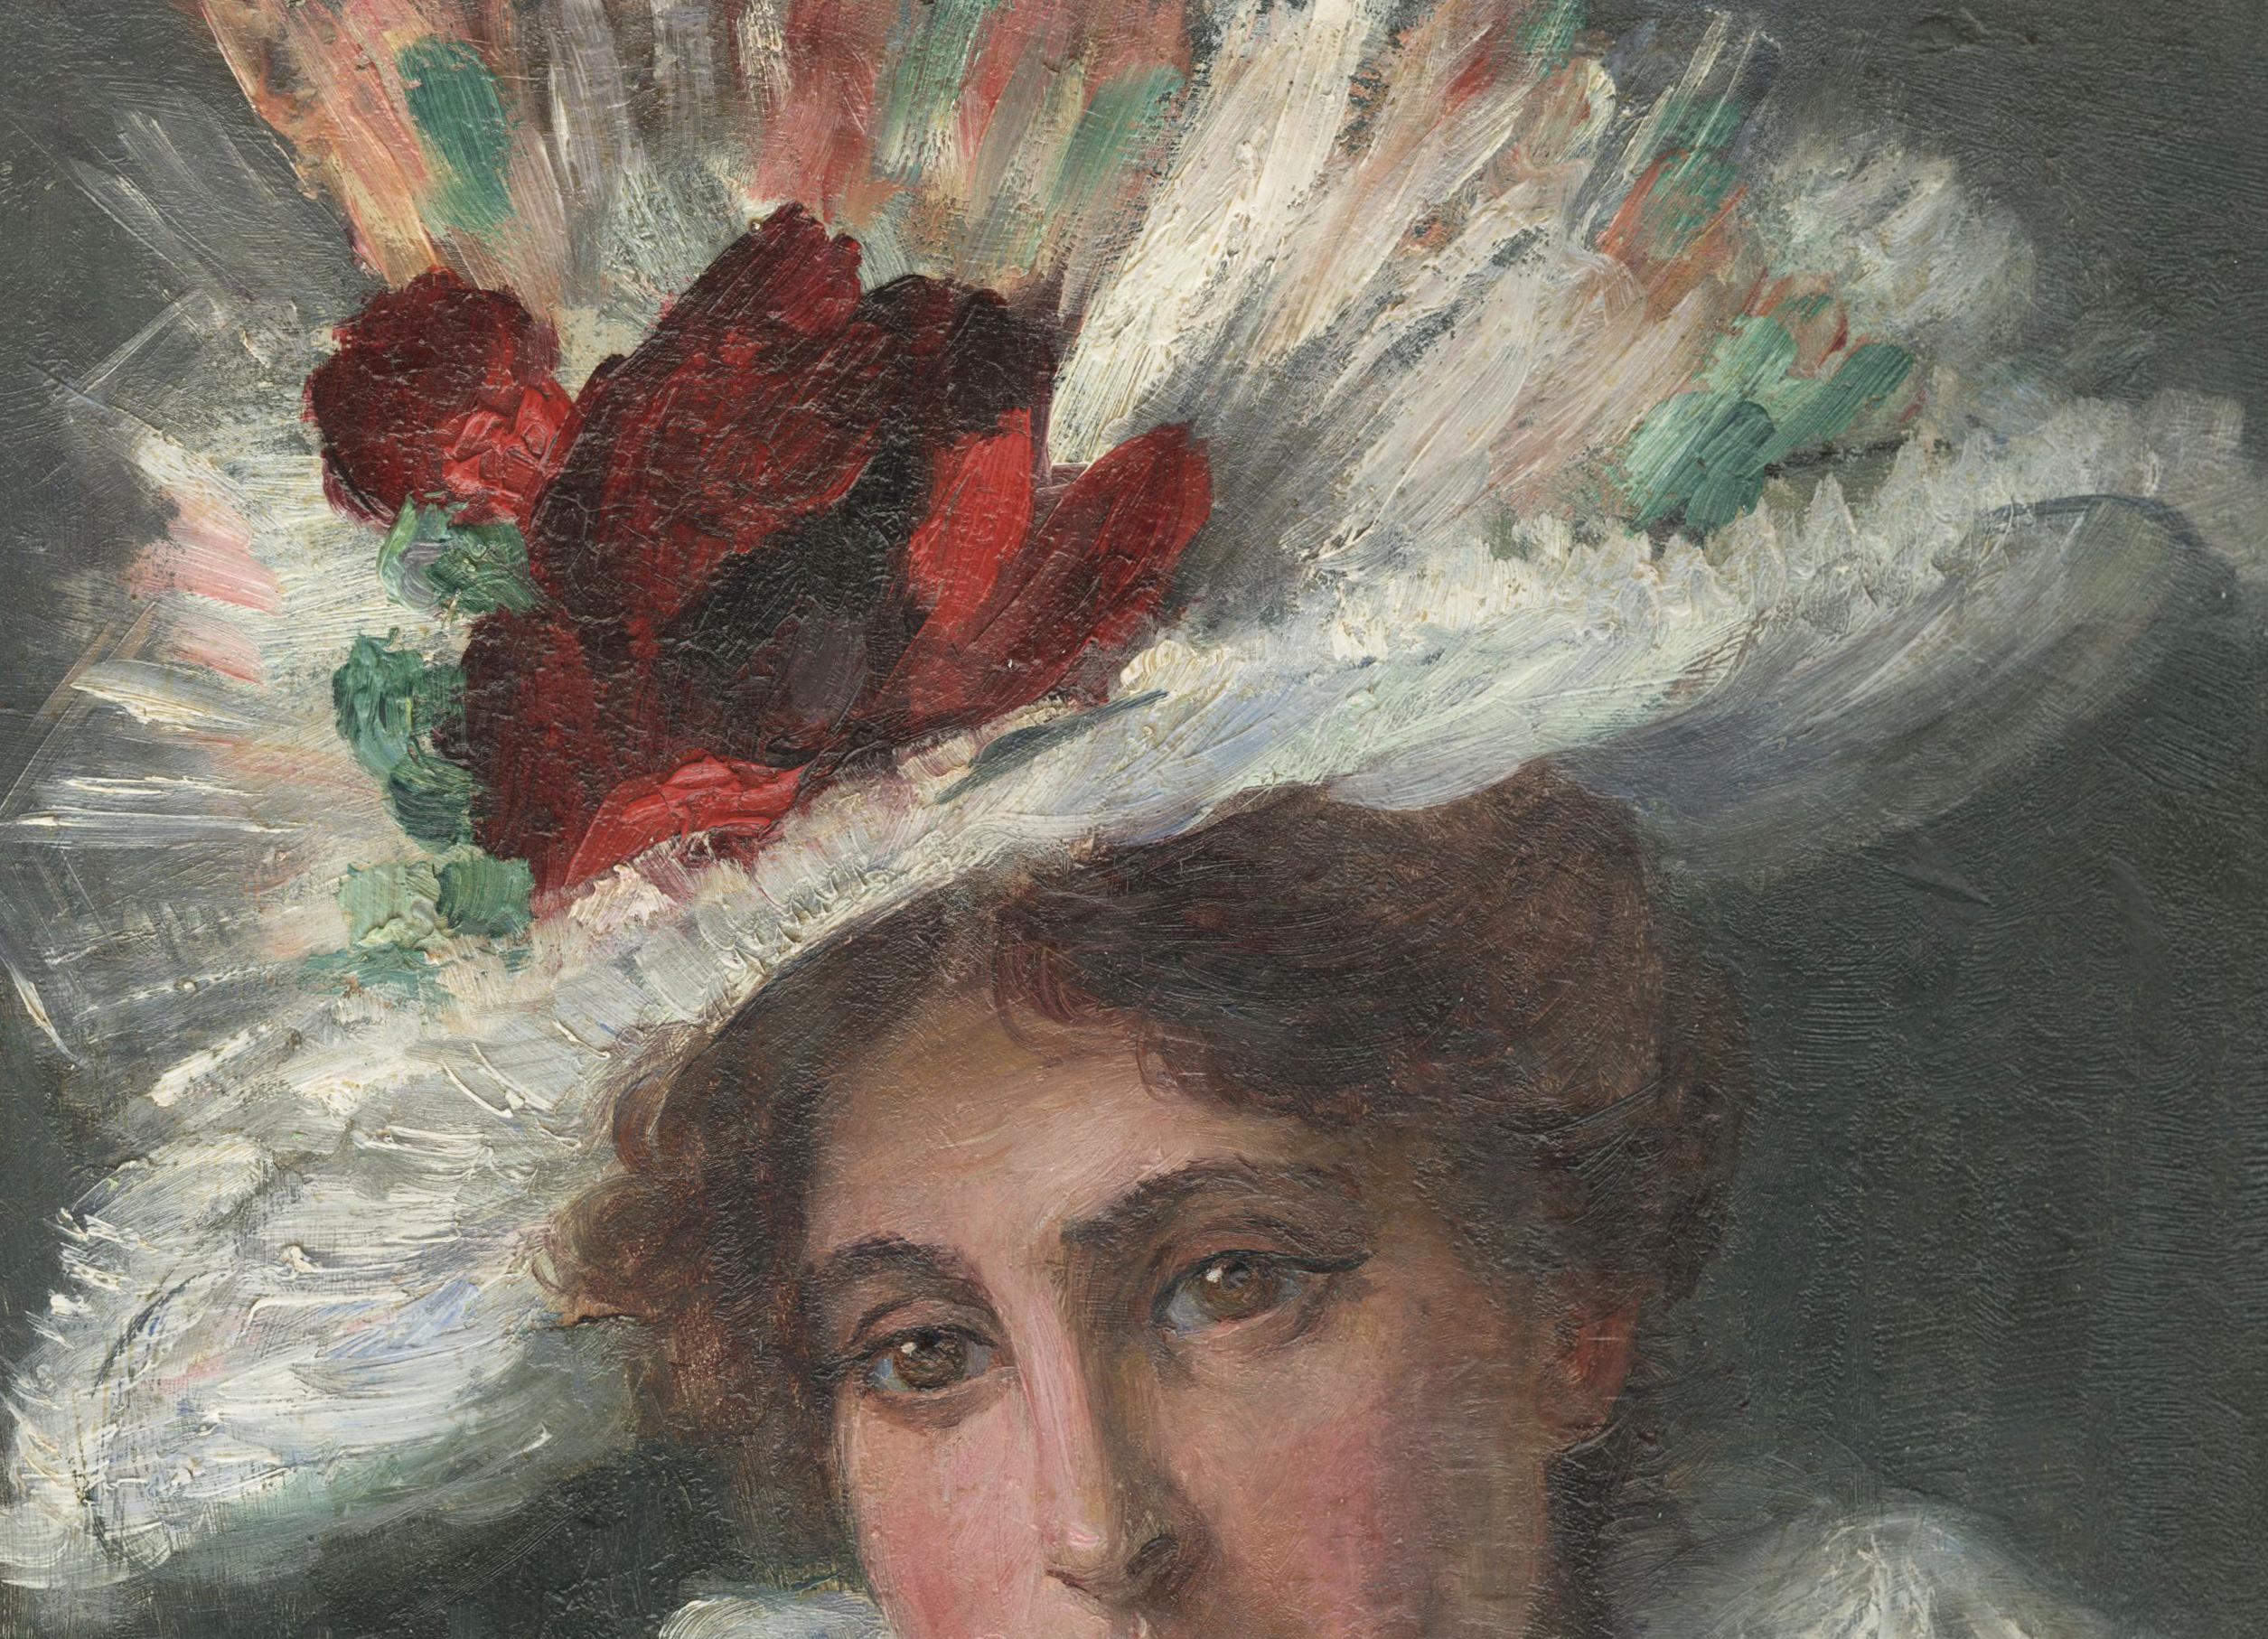 Le foulard blanc (autoportrait de l'artiste) - Impressionnisme américain Painting par Eugenie M. Heller